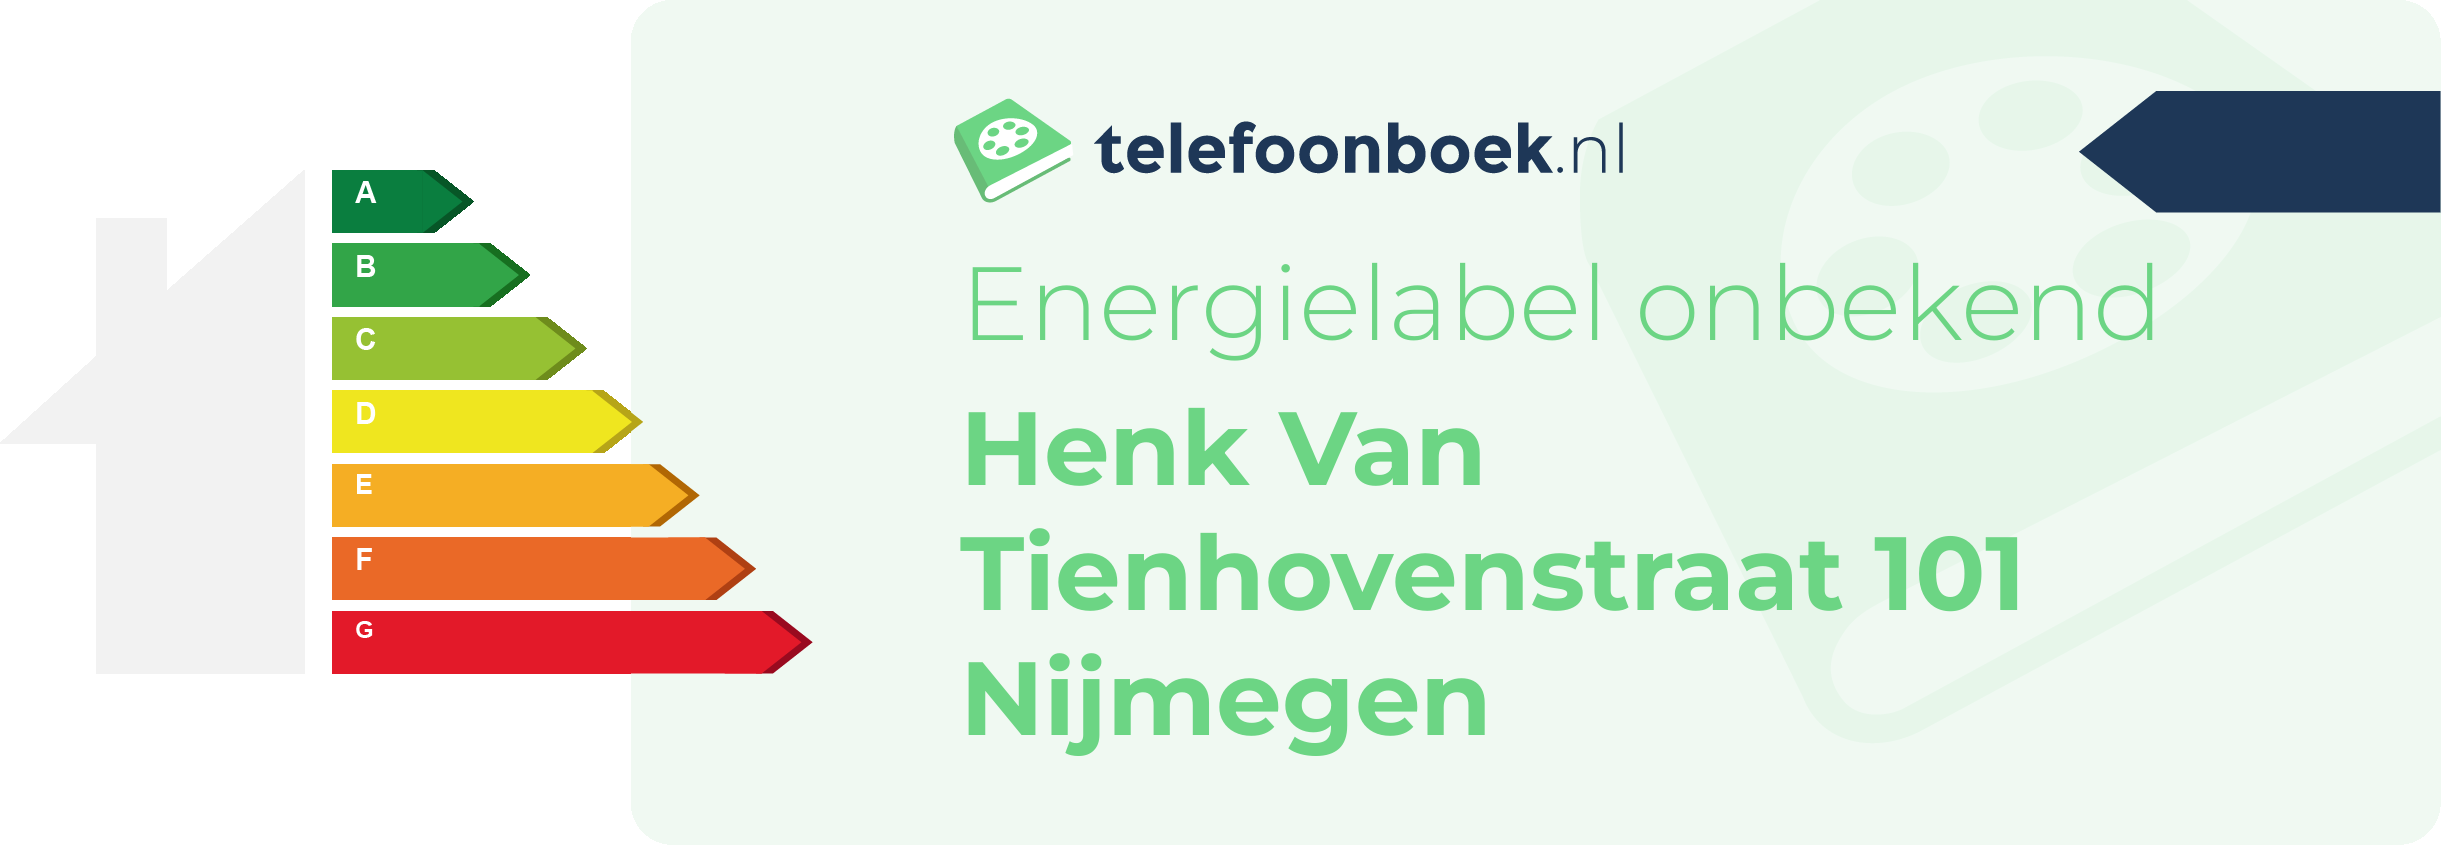 Energielabel Henk Van Tienhovenstraat 101 Nijmegen